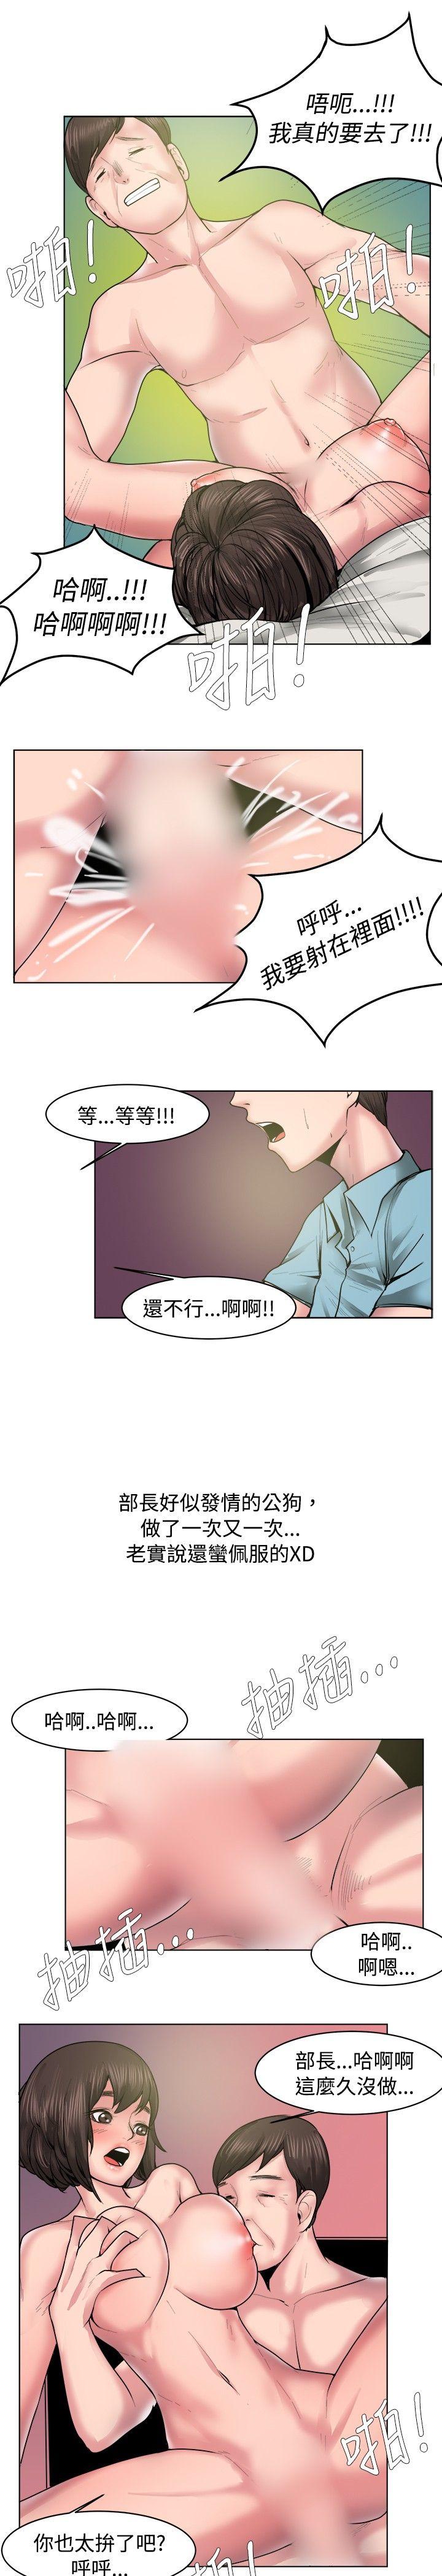 韩国污漫画 秘密Story 女同事的不伦恋(下) 9